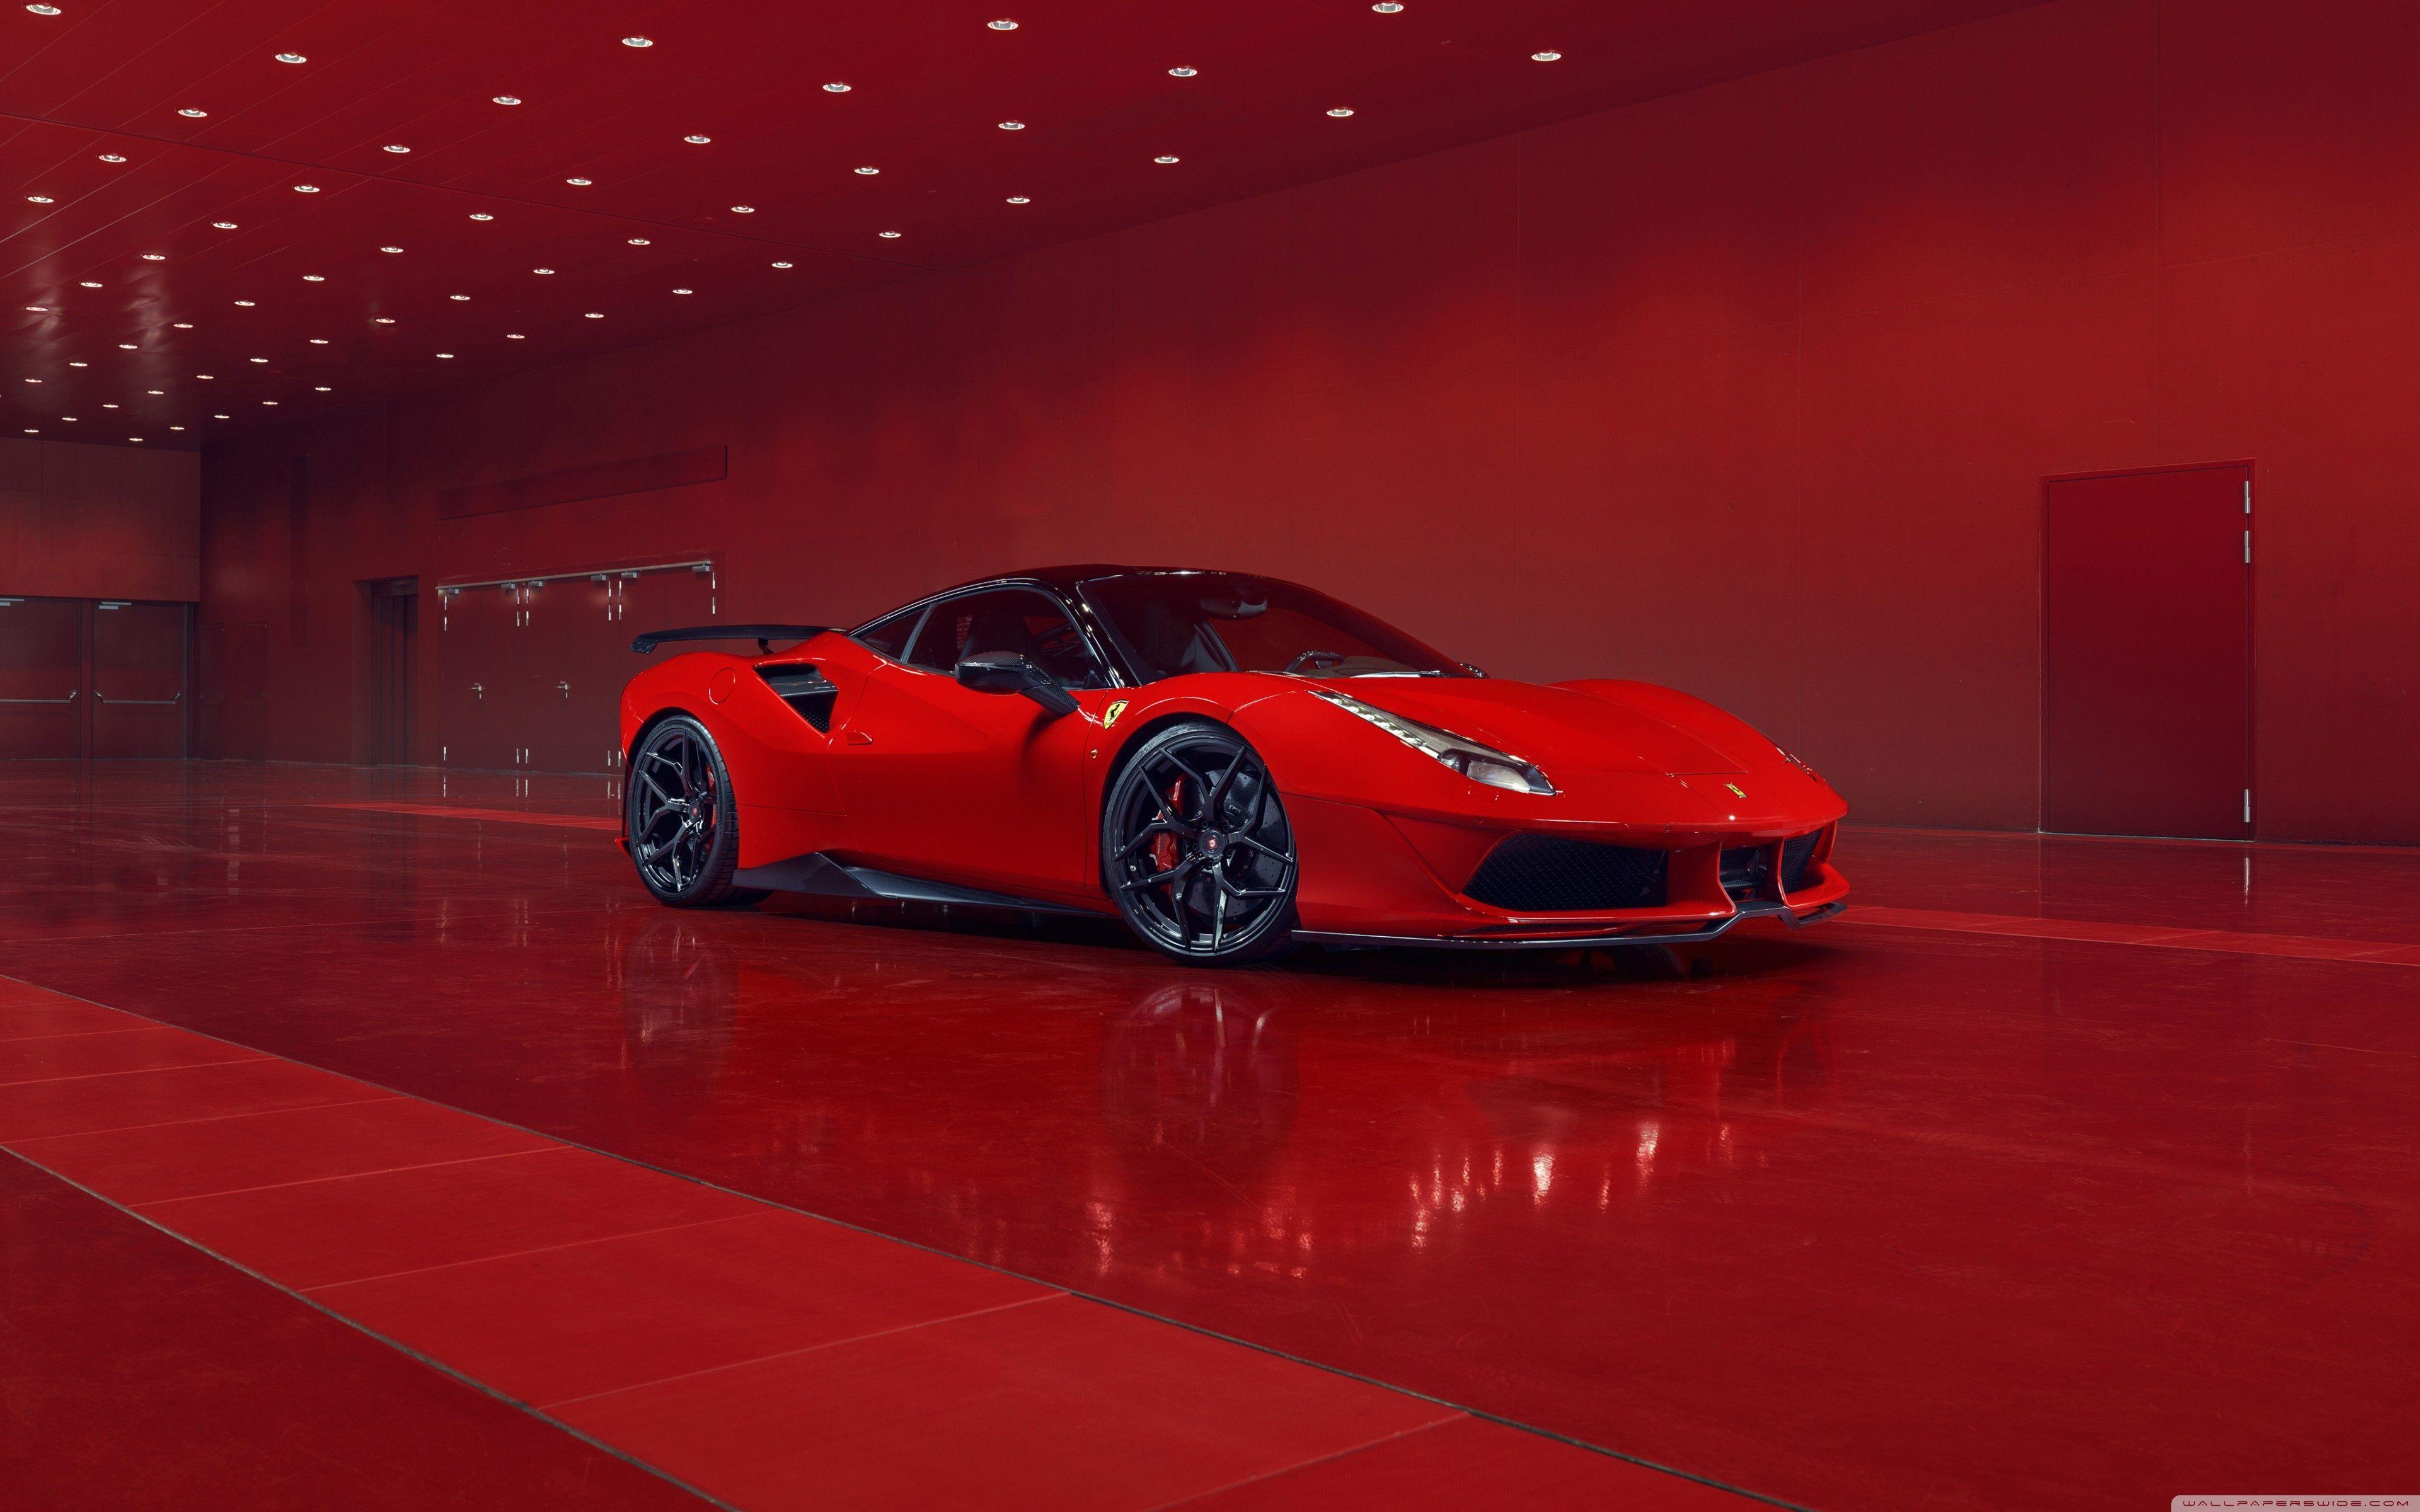 Red Ferrari Sports Car Wallpapers - Wallpaper Cave